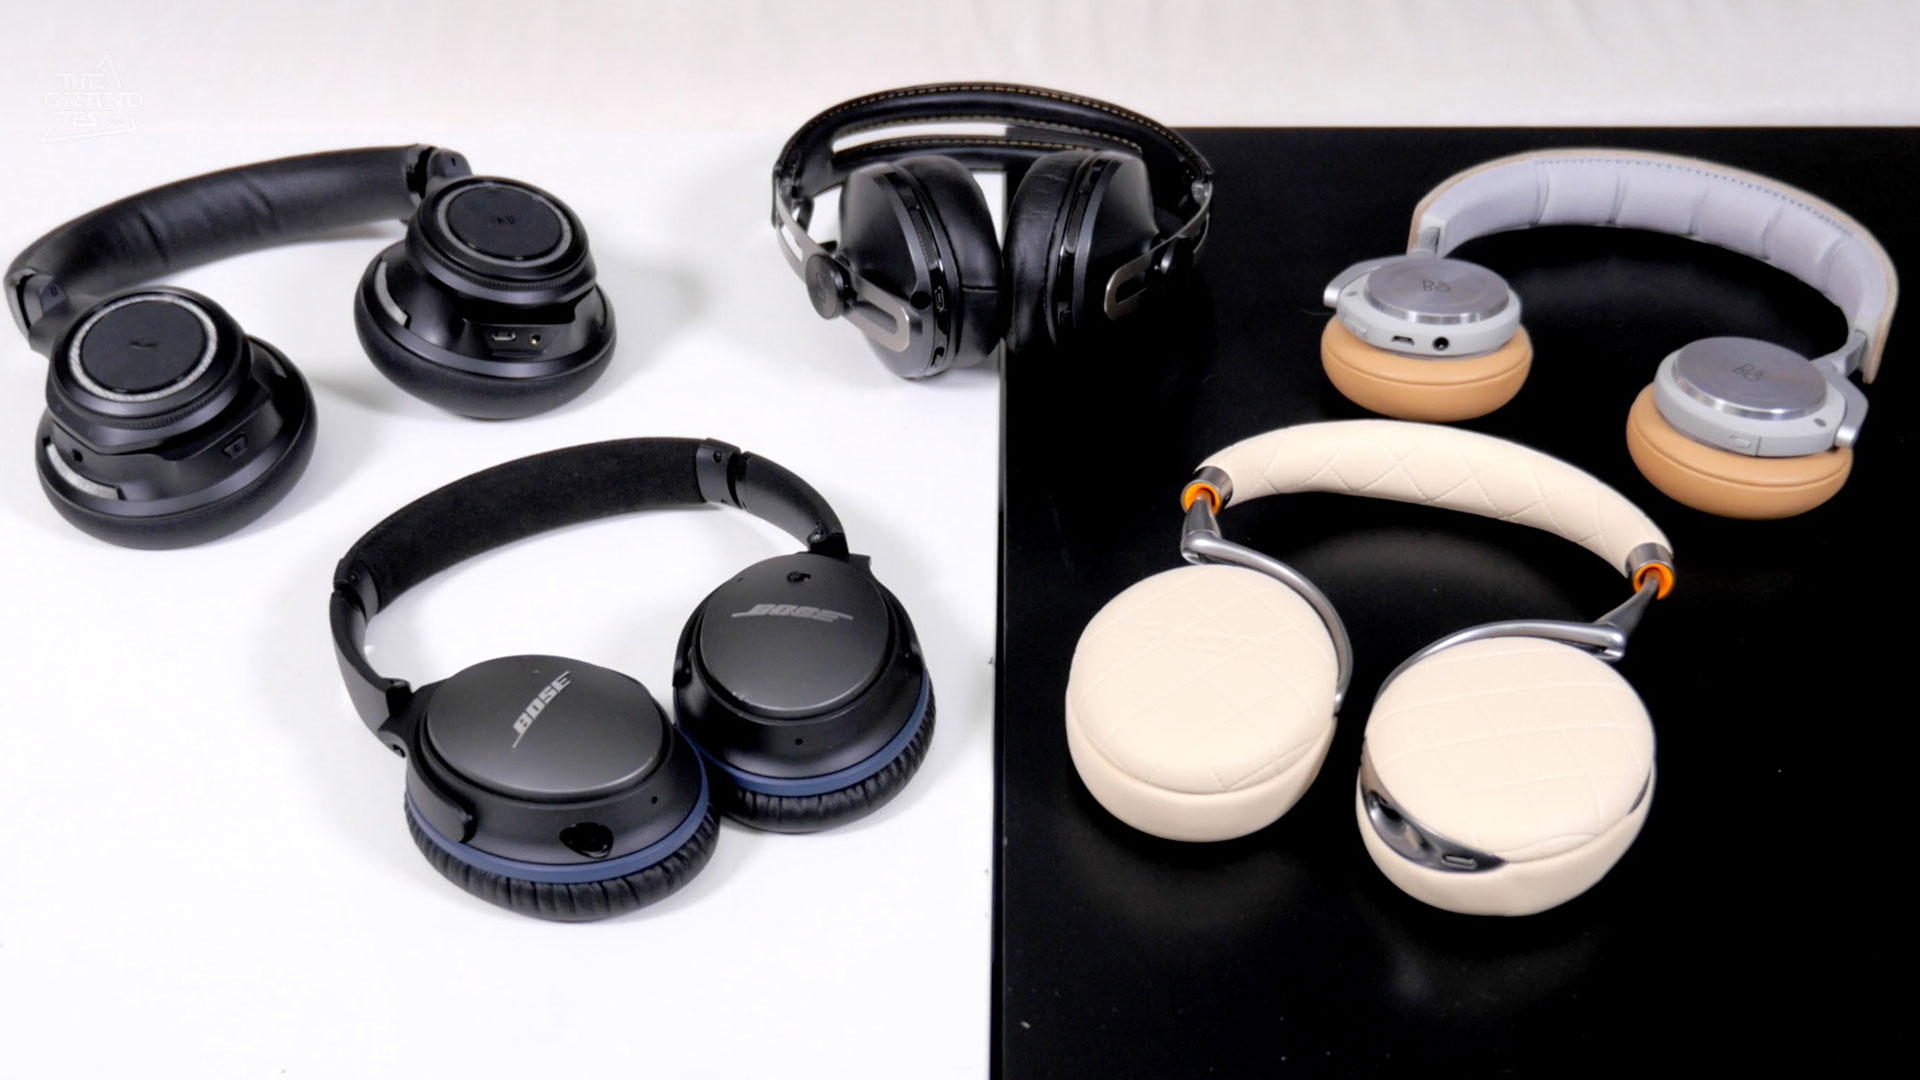 Comparatif casque audio, écouteur à réduction de bruit active